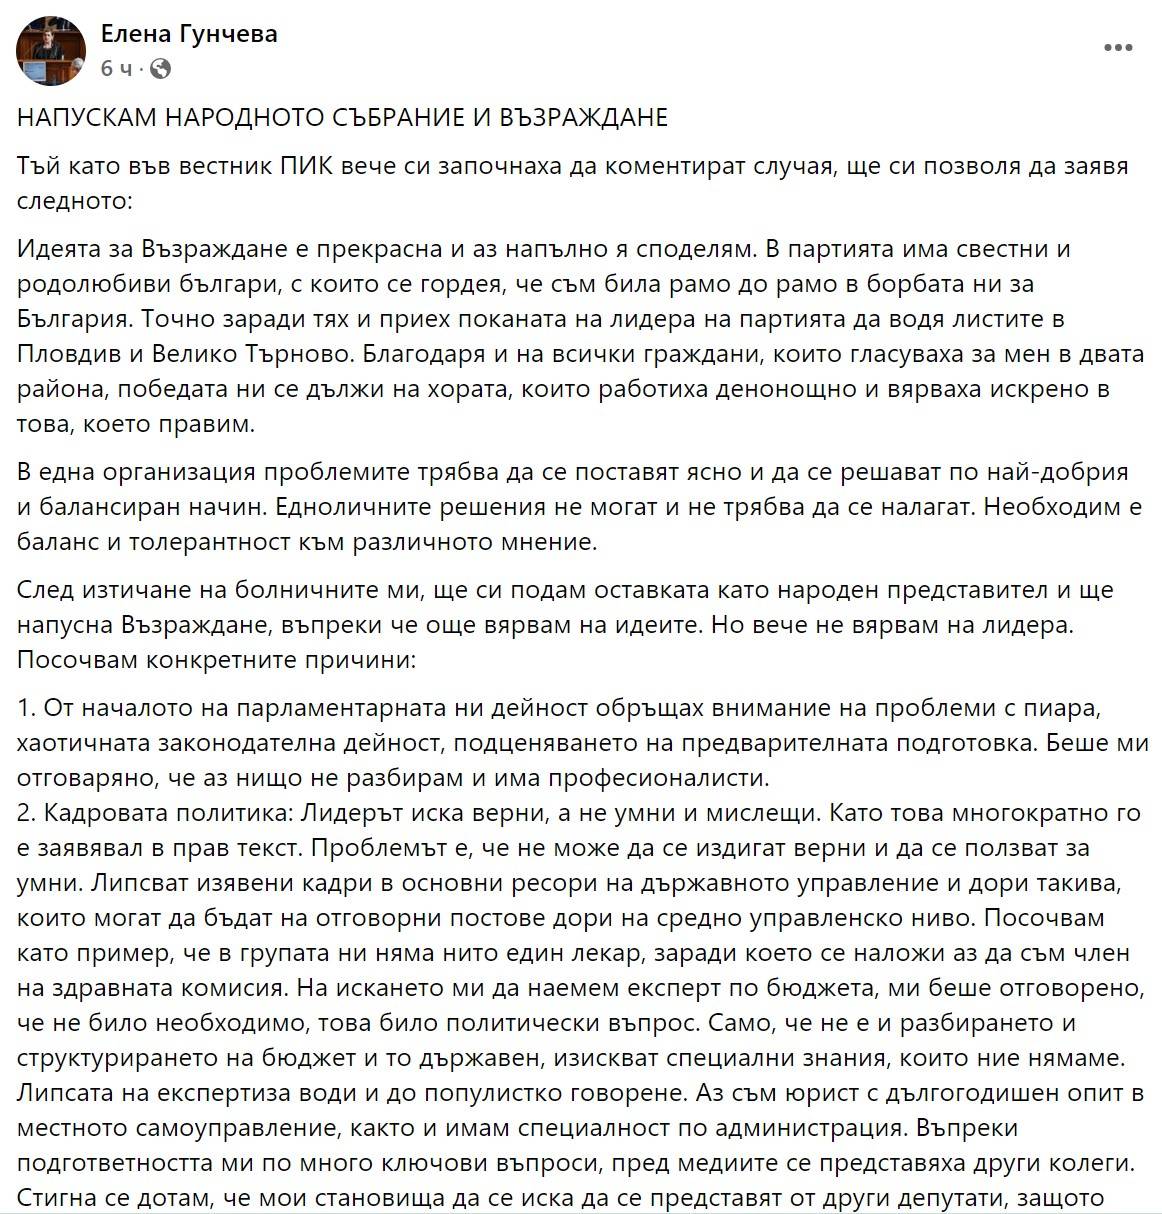 Постът на Елена Гунчева